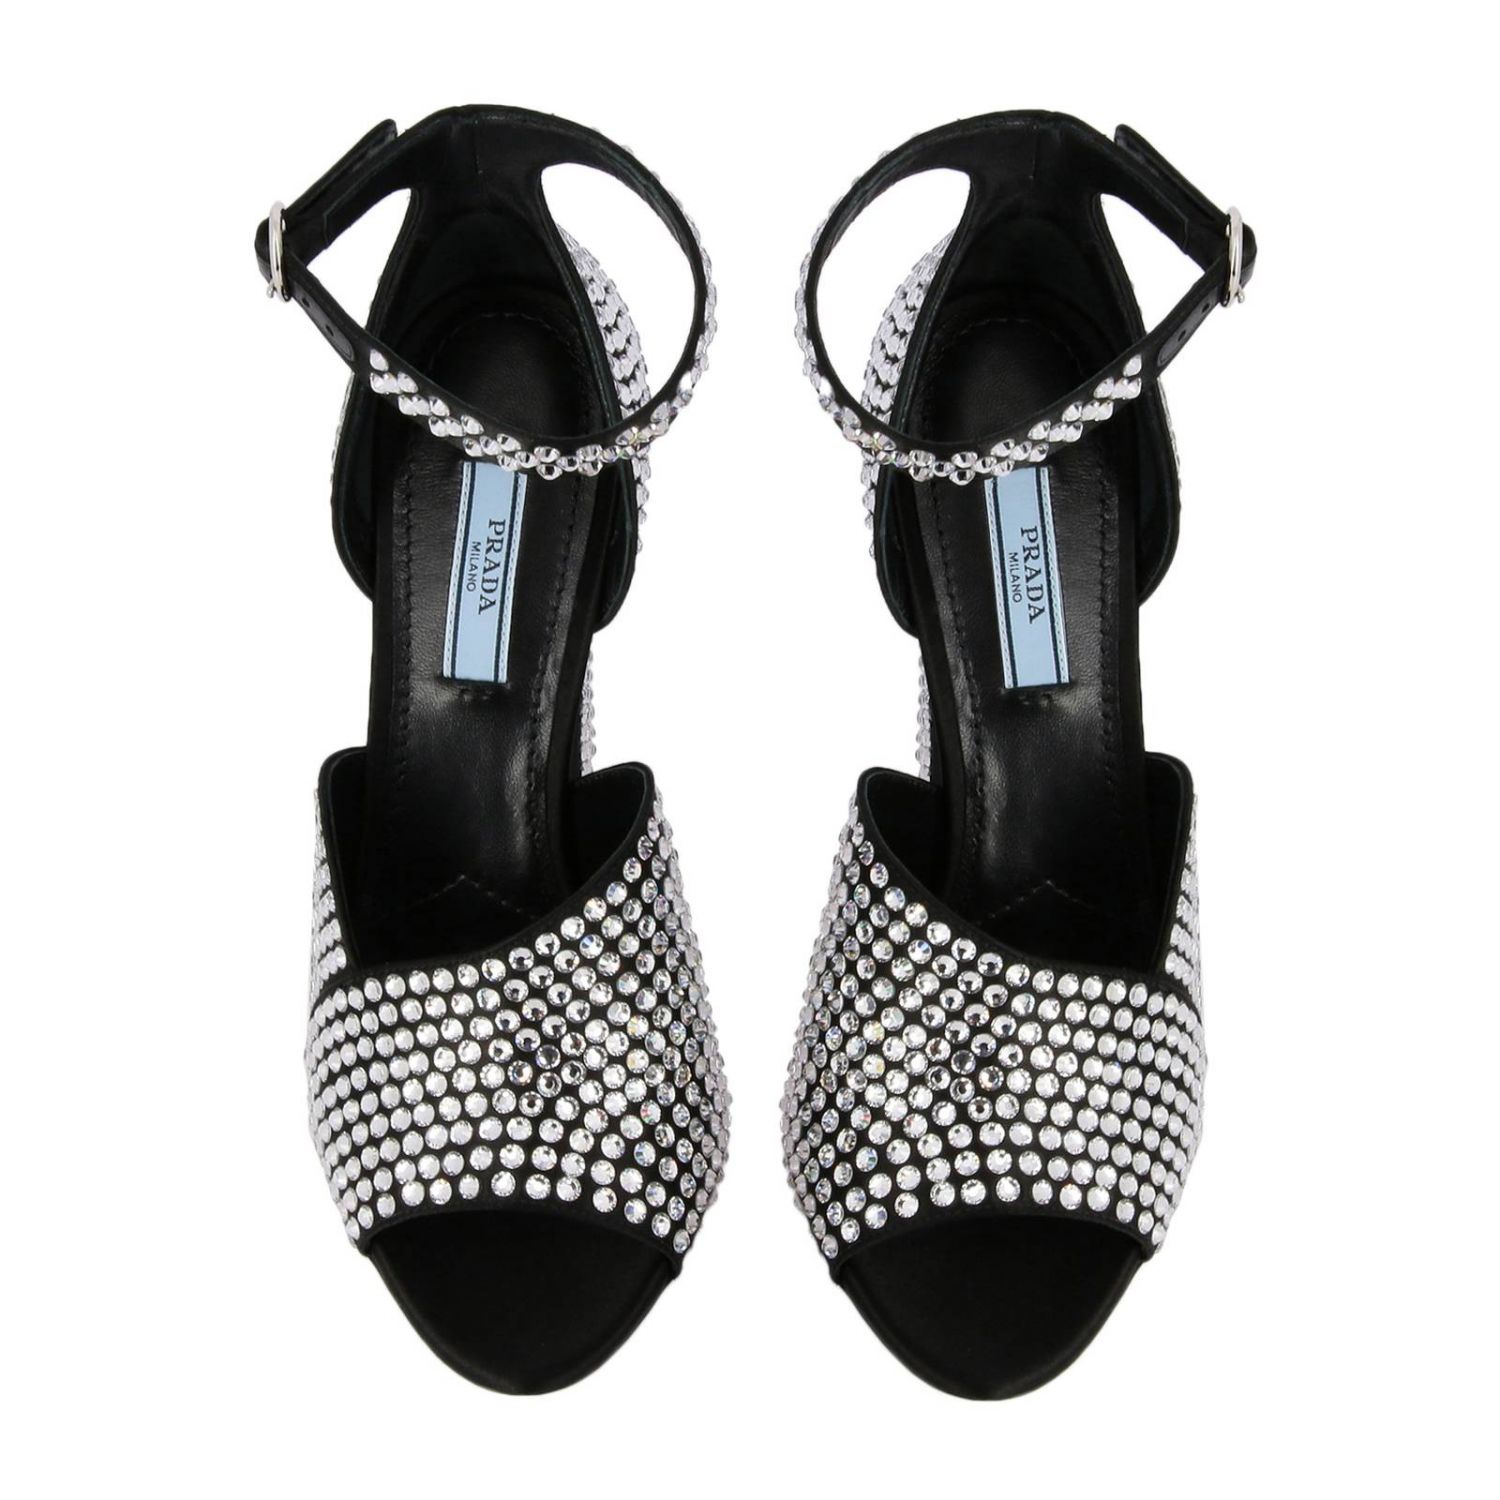 Босоножки на каблуке Prada: Сандалии Prada с открытым носком и кристаллами all over черный 3